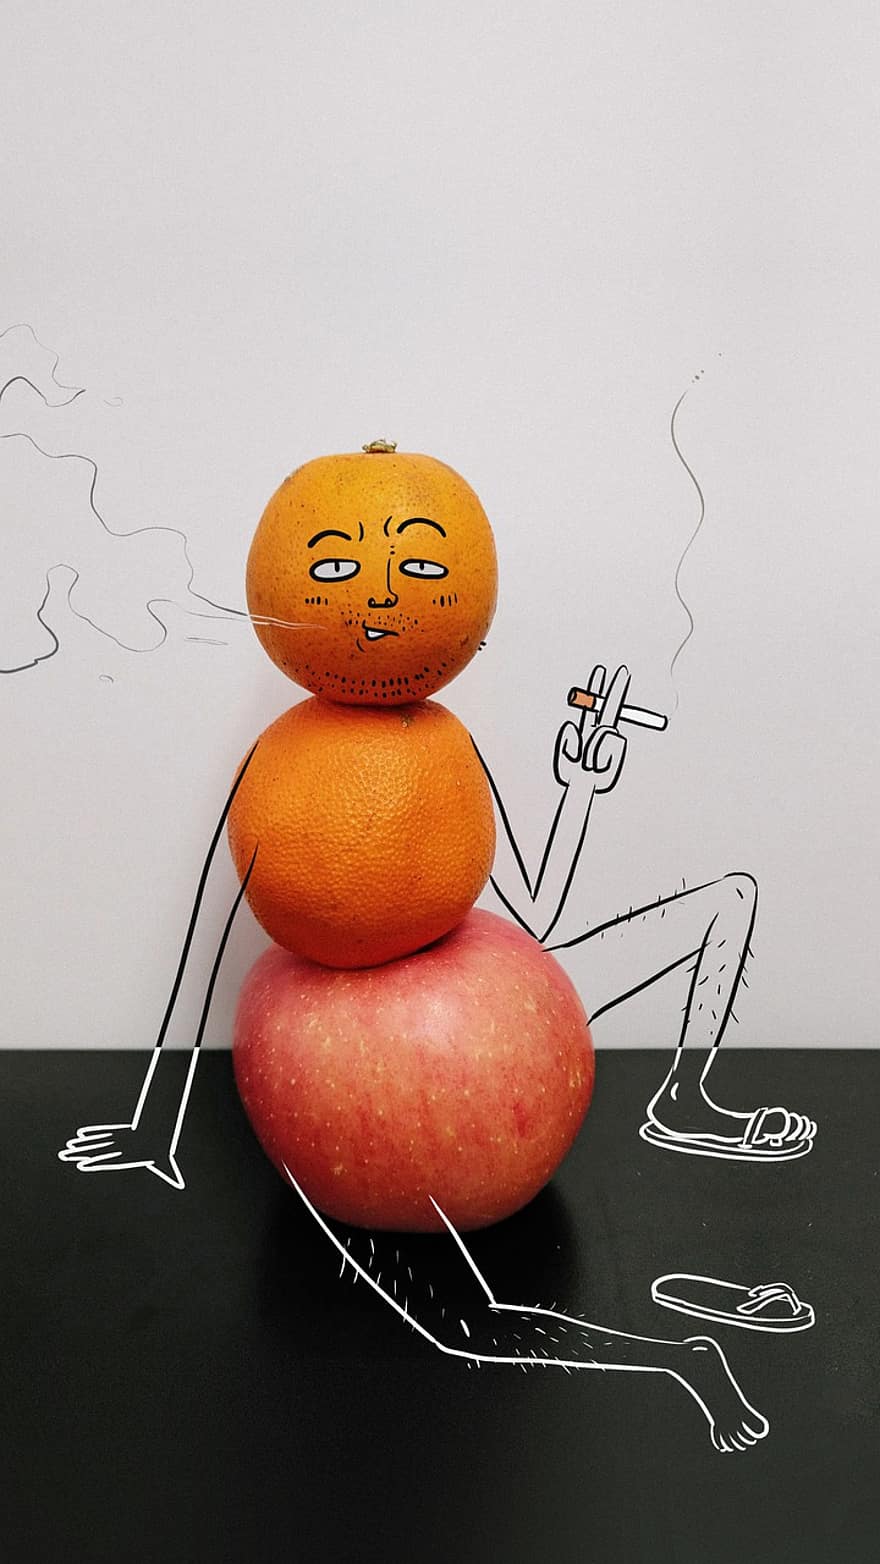 pictură, creativitate, fruct, măr, portocale, decadent, fumat, varsta mijlocie